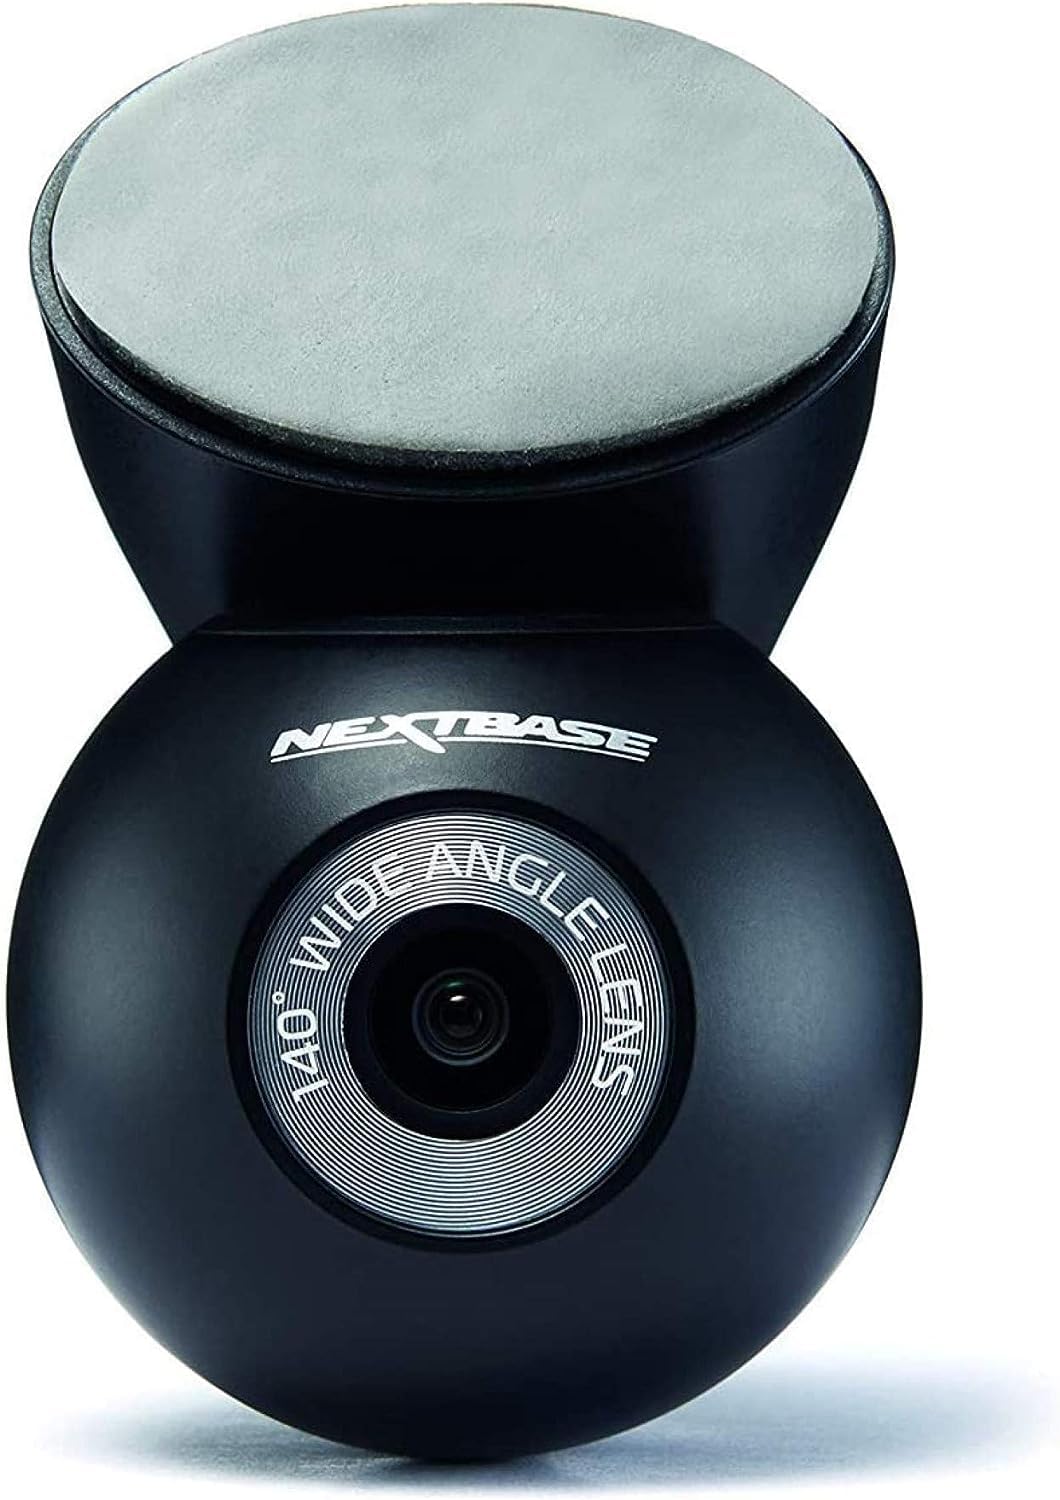 Nextbase Series 2-Zusatzmodulkameras - Cockpitkamera für den gewerblichen Einsatz - Kompatibel mit Dash-Cam-Modellen der Serien 2 (322GW, 422GW und 522GW) - Front- und Heck-Dash-Cam-Aufnahmen